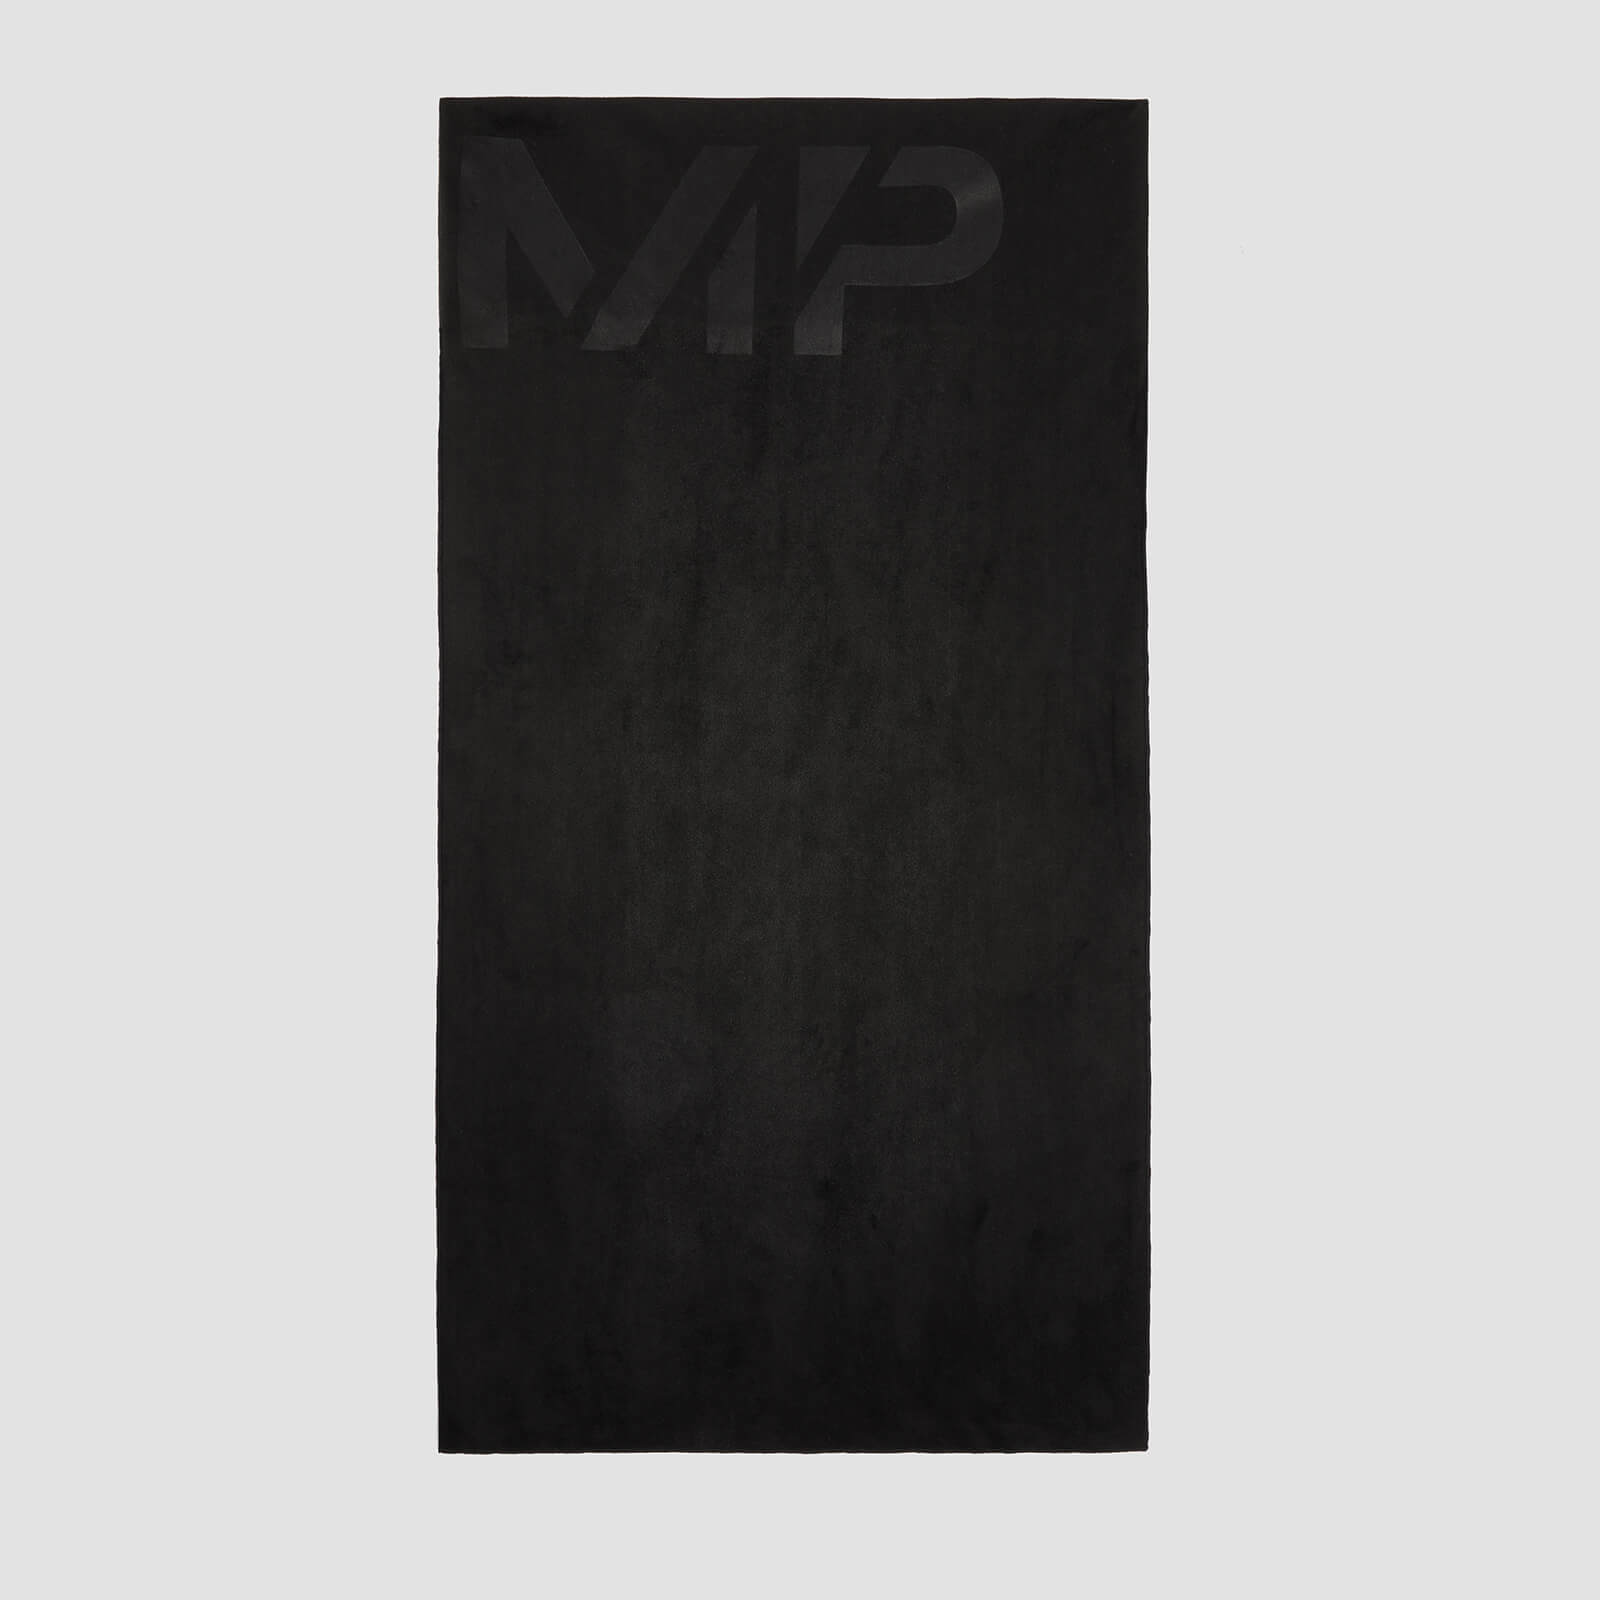 Микрофибърна кърпа за ръце Performance на MP - черна